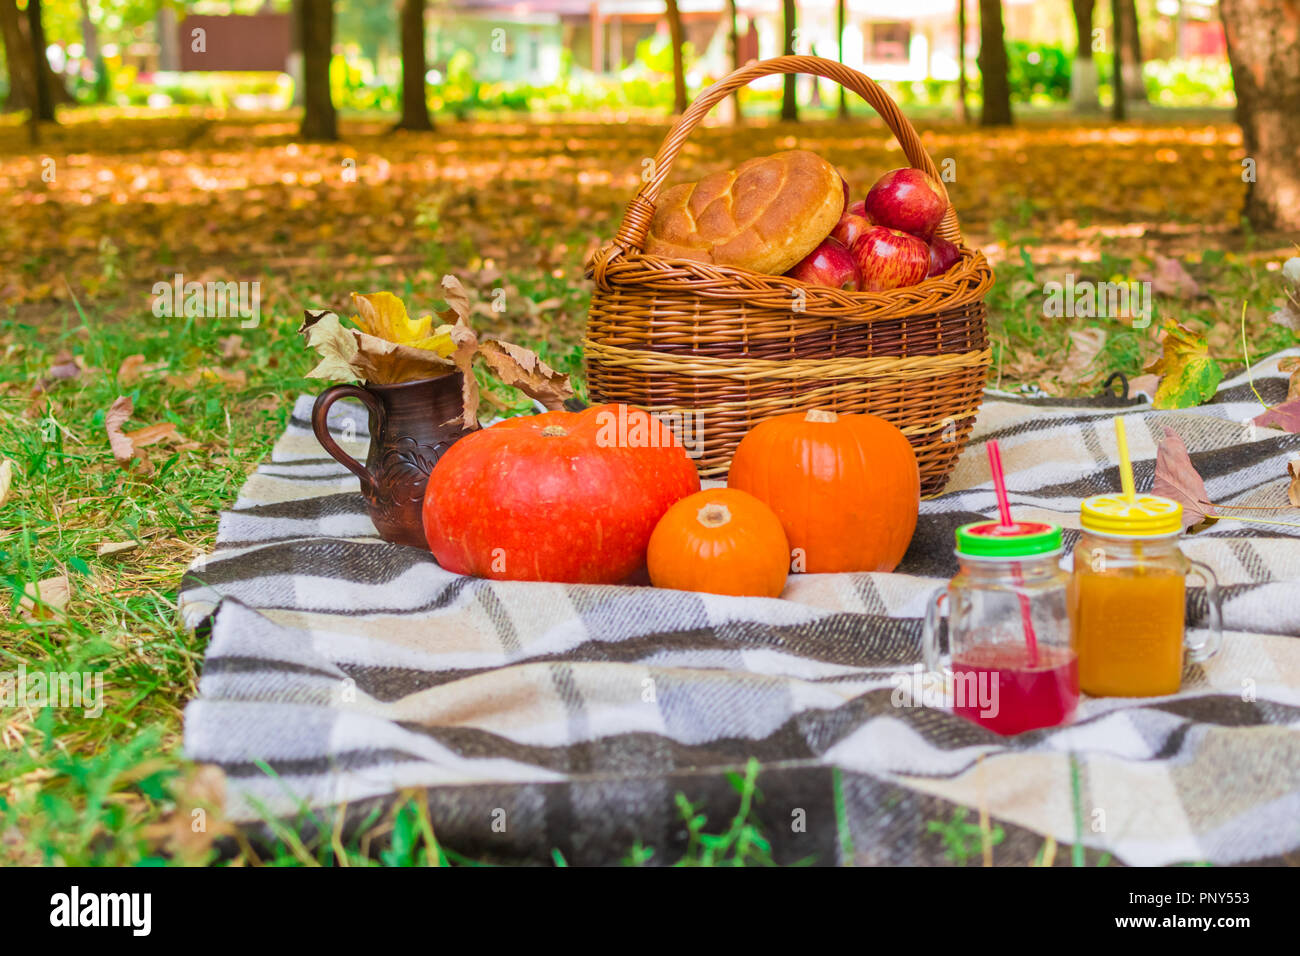 Picnic in natura. cesto di vimini su un plaid plaid. intorno al fogliame giallo, bevande, zucche e mele, una focaccia di pane una brocca Foto Stock